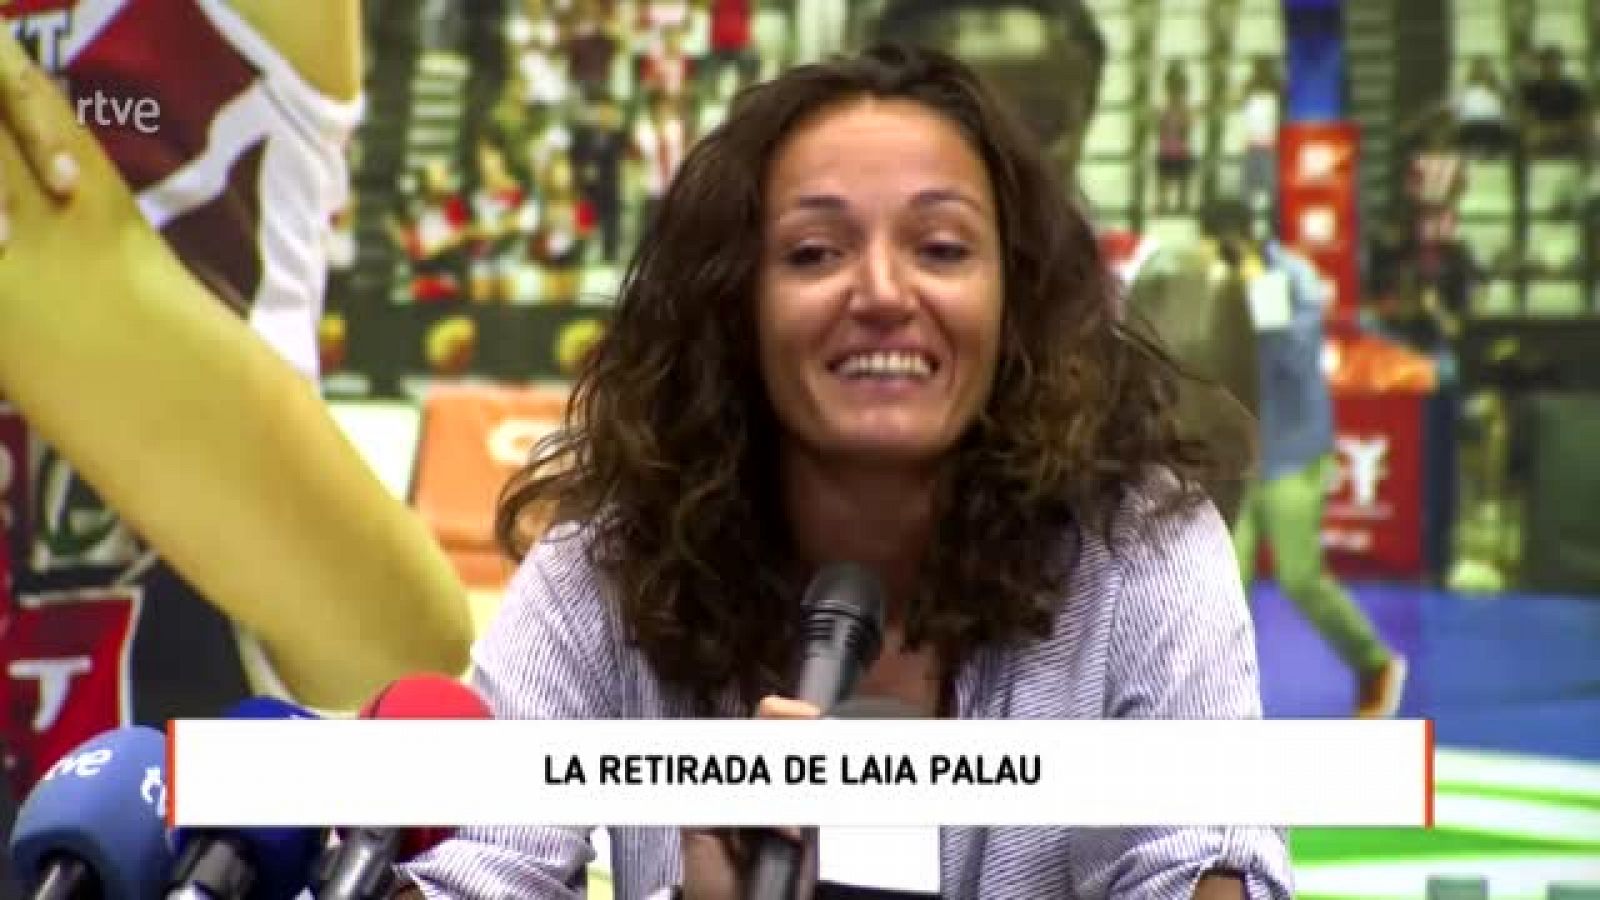 Laia Palau se retira con 42 años: "No cambiaría nada de lo que he hecho"